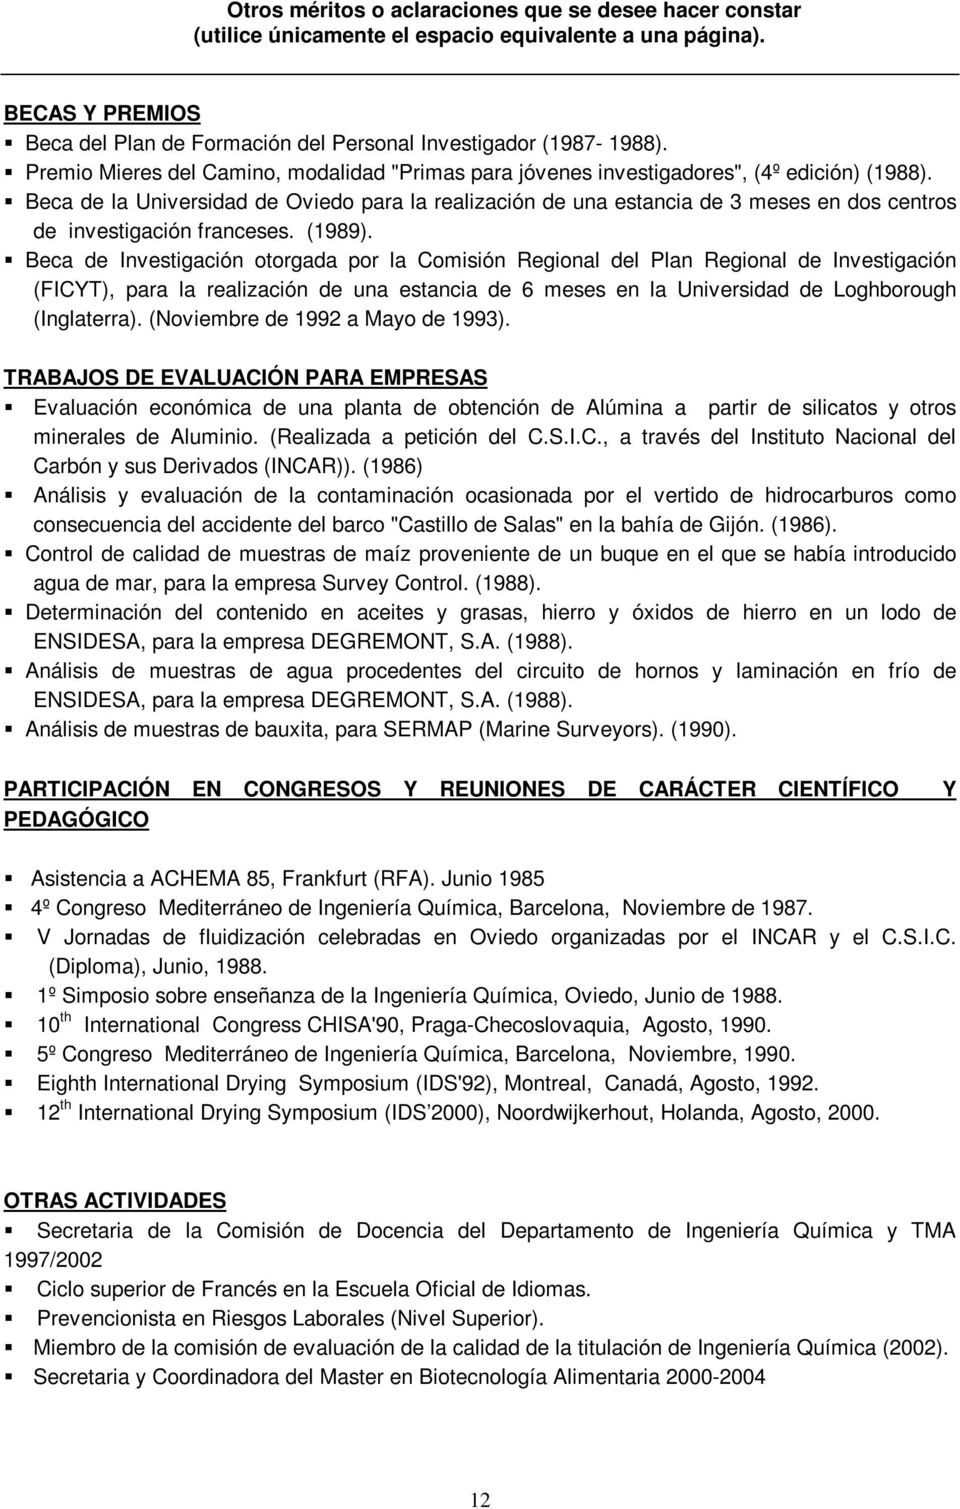 Beca de la Universidad de Oviedo para la realización de una estancia de 3 meses en dos centros de investigación franceses. (1989).